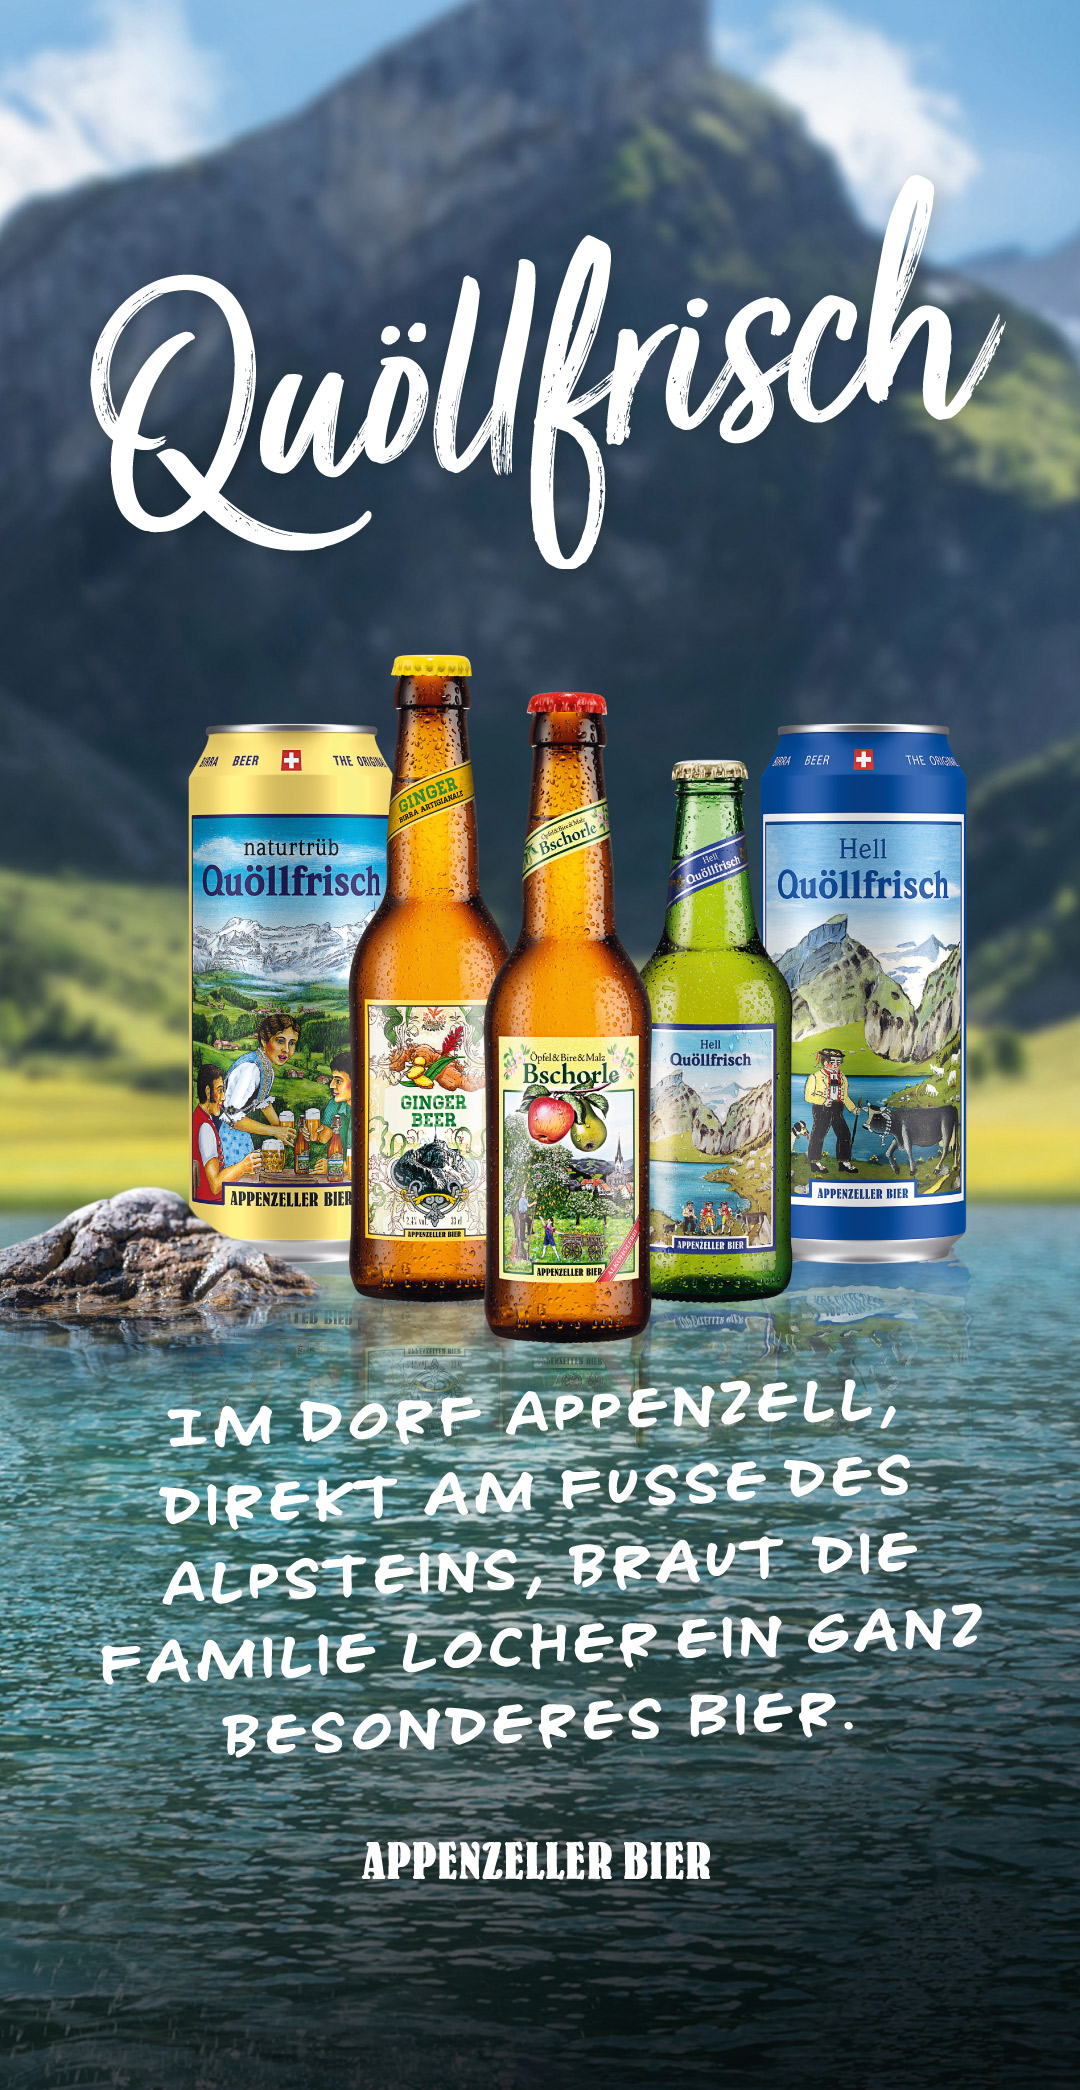 Verschiedenes Quöllfrisch Bier. Im Hintergrund ist ein See und Berge